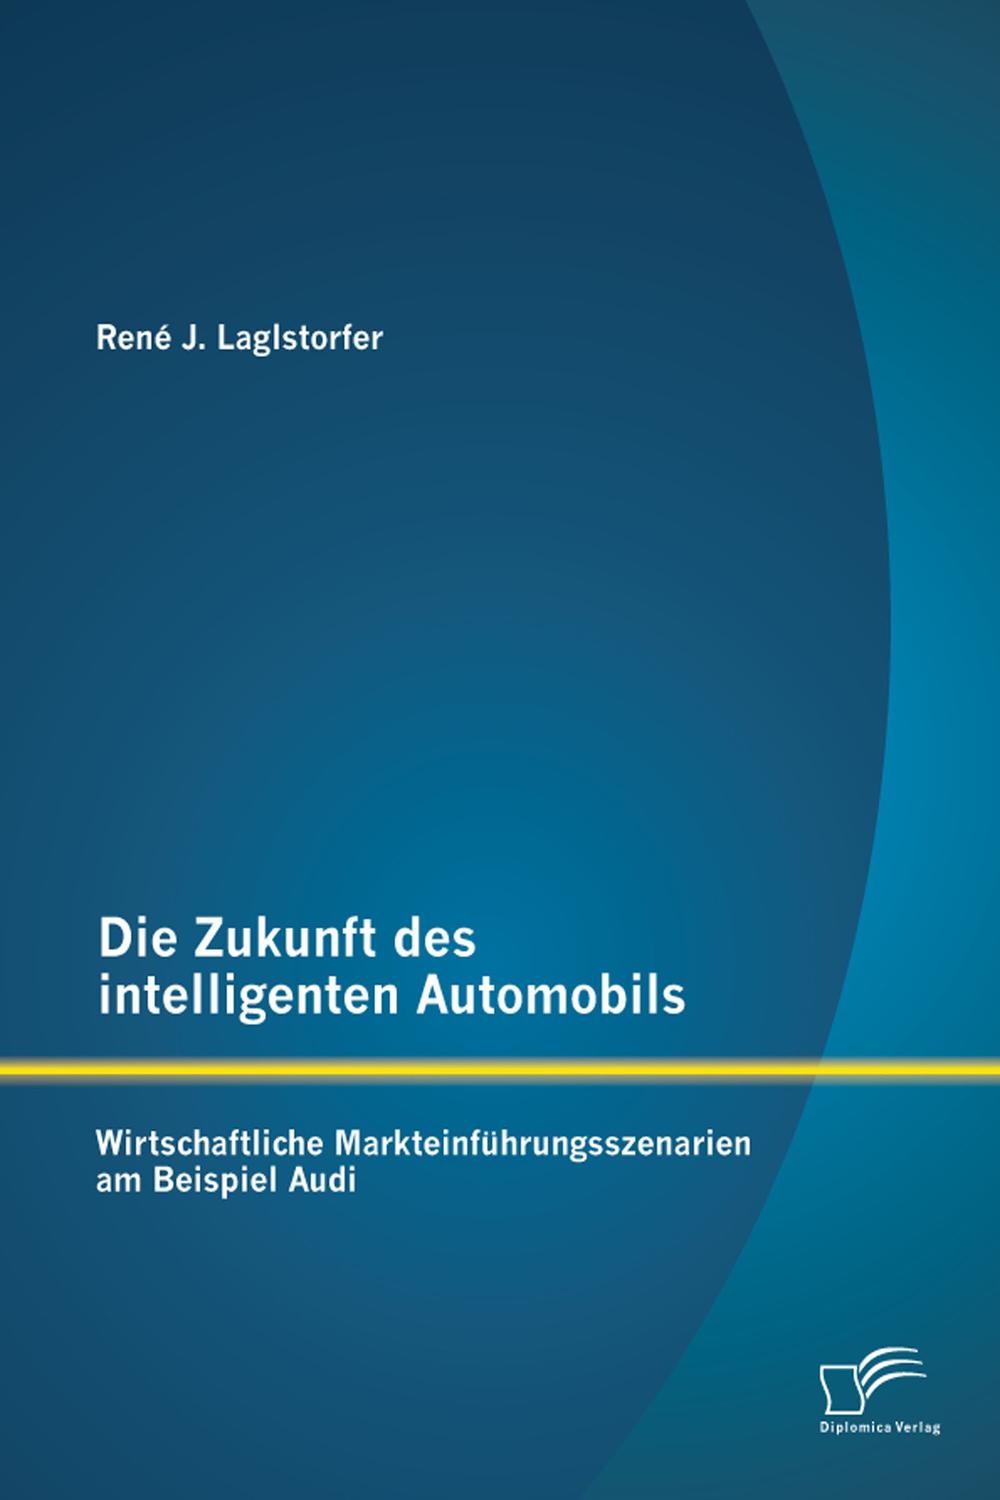 Die Zukunft des intelligenten Automobils: Wirtschaftliche Markteinführungsszenarien am Beispiel Audi - René J. Laglstorfer